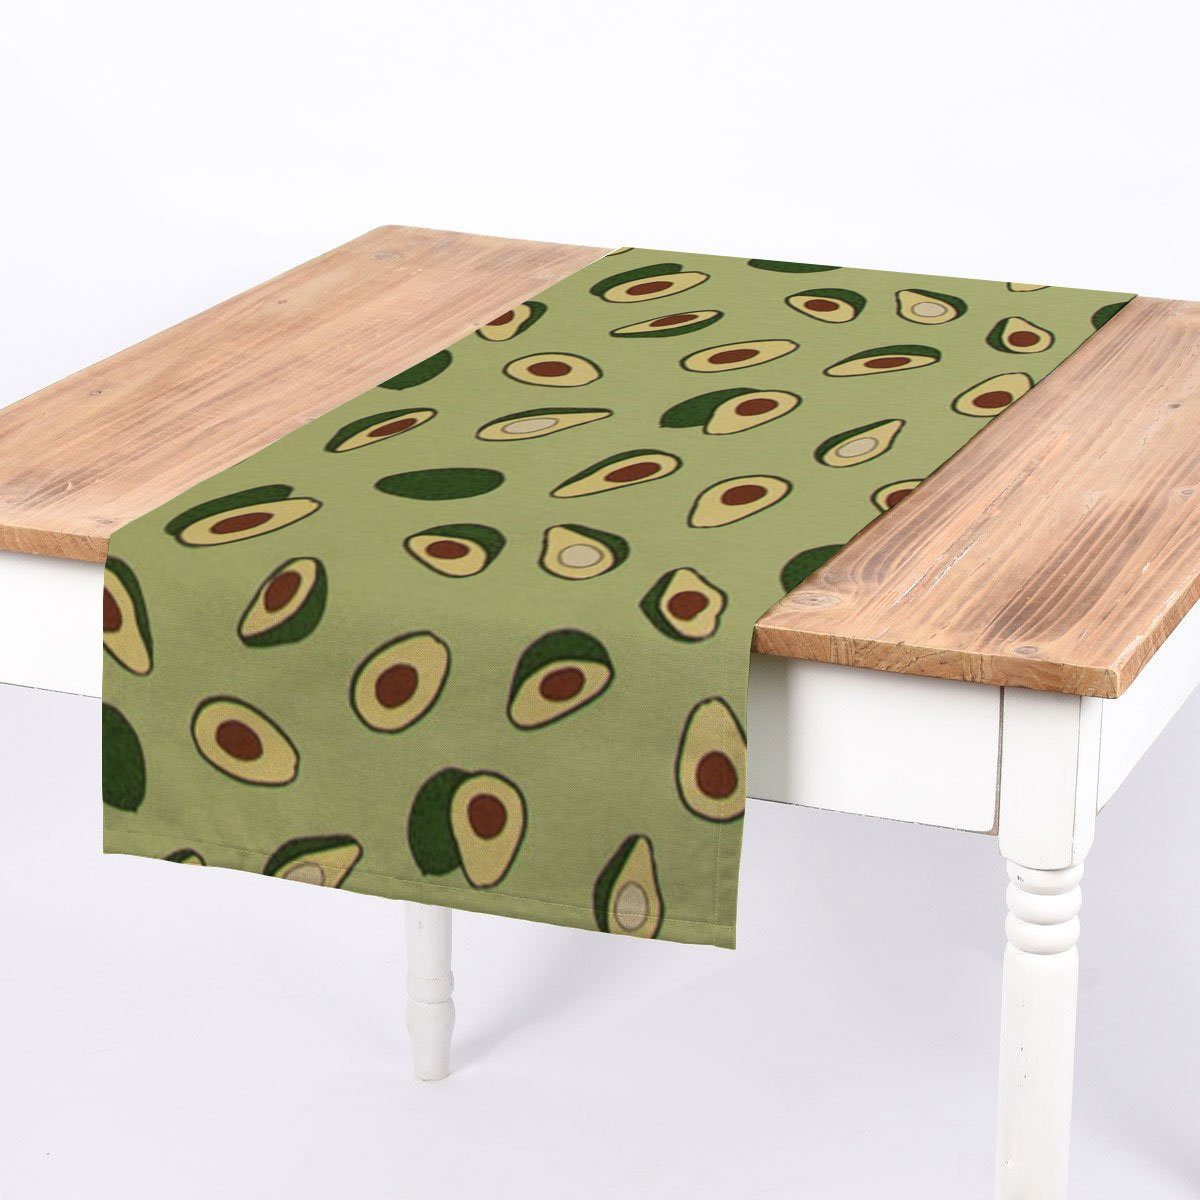 SCHÖNER LEBEN. Tischläufer SCHÖNER LEBEN. Tischläufer Avocado grün braun 40x160cm, handmade